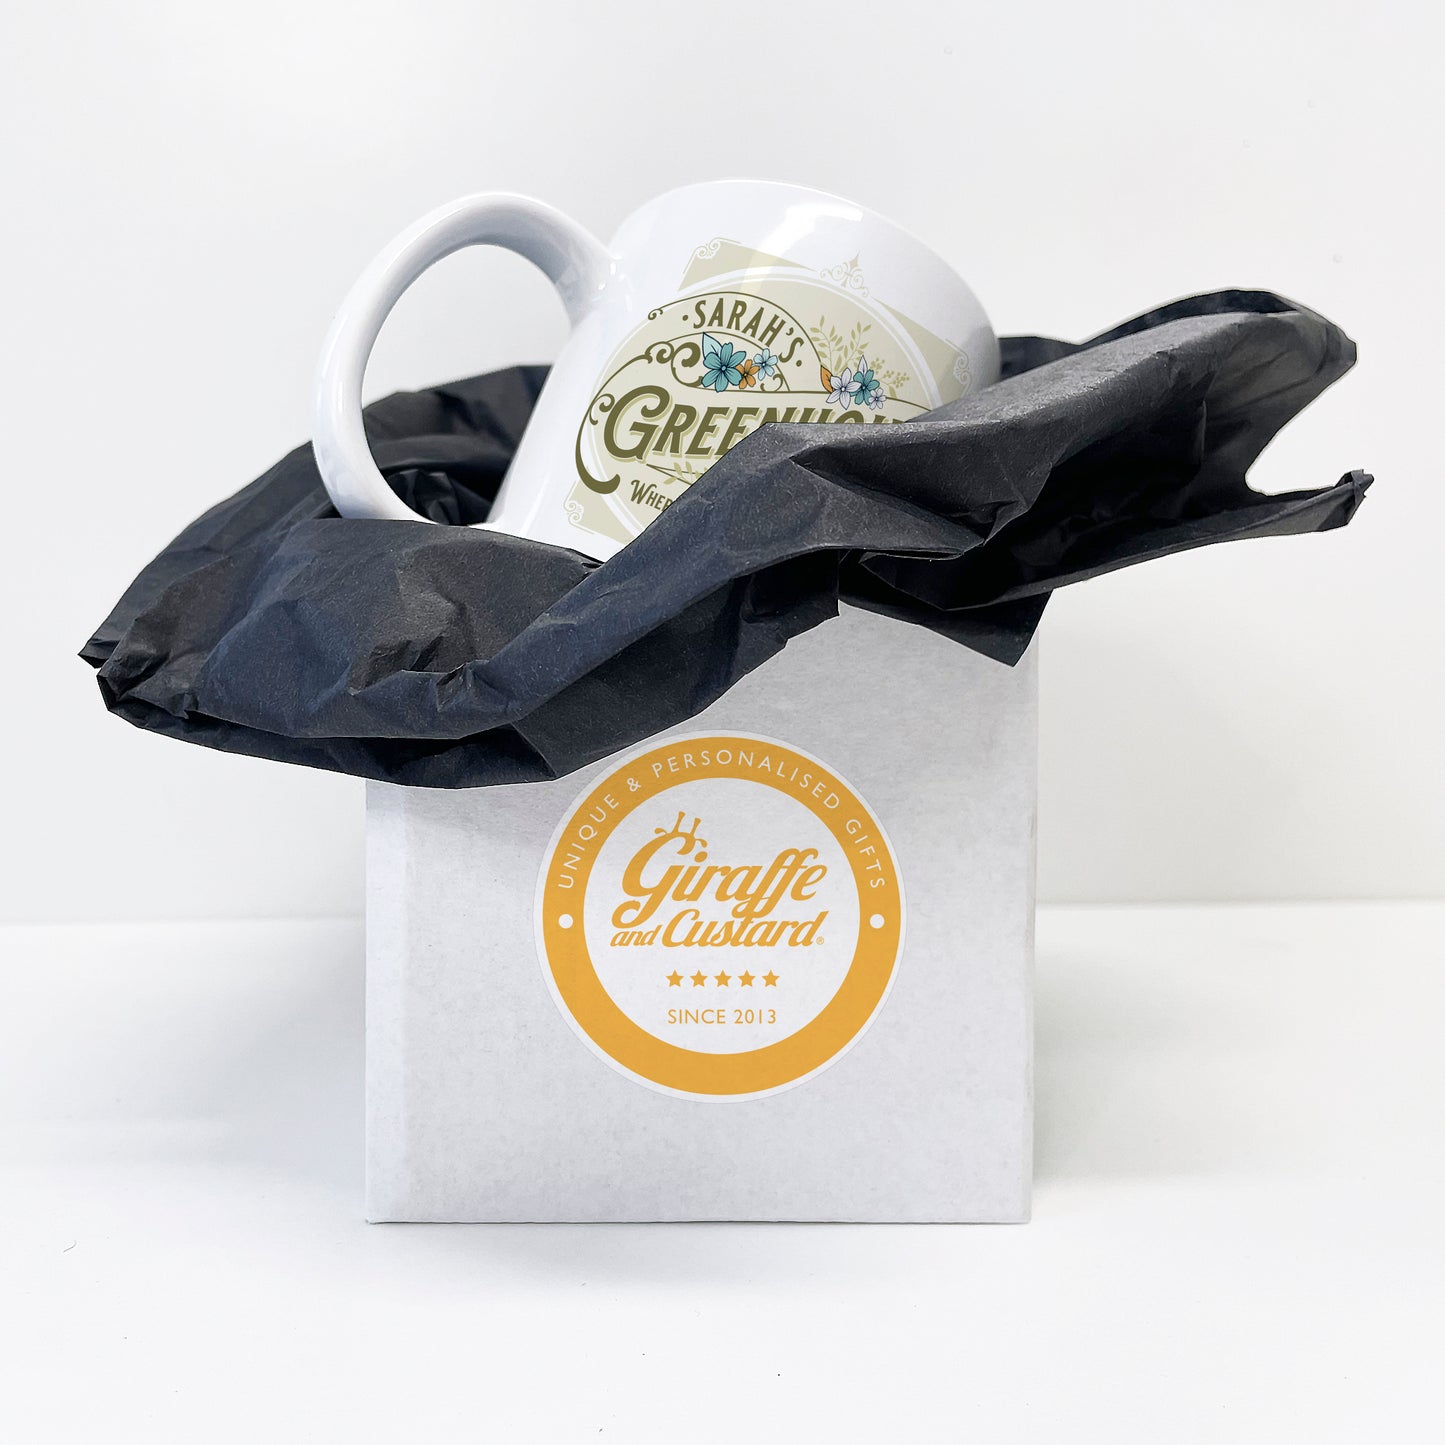 Personalised Greenhouse Vintage Gardener Ceramic Mug Gift 11oz showing box packaging